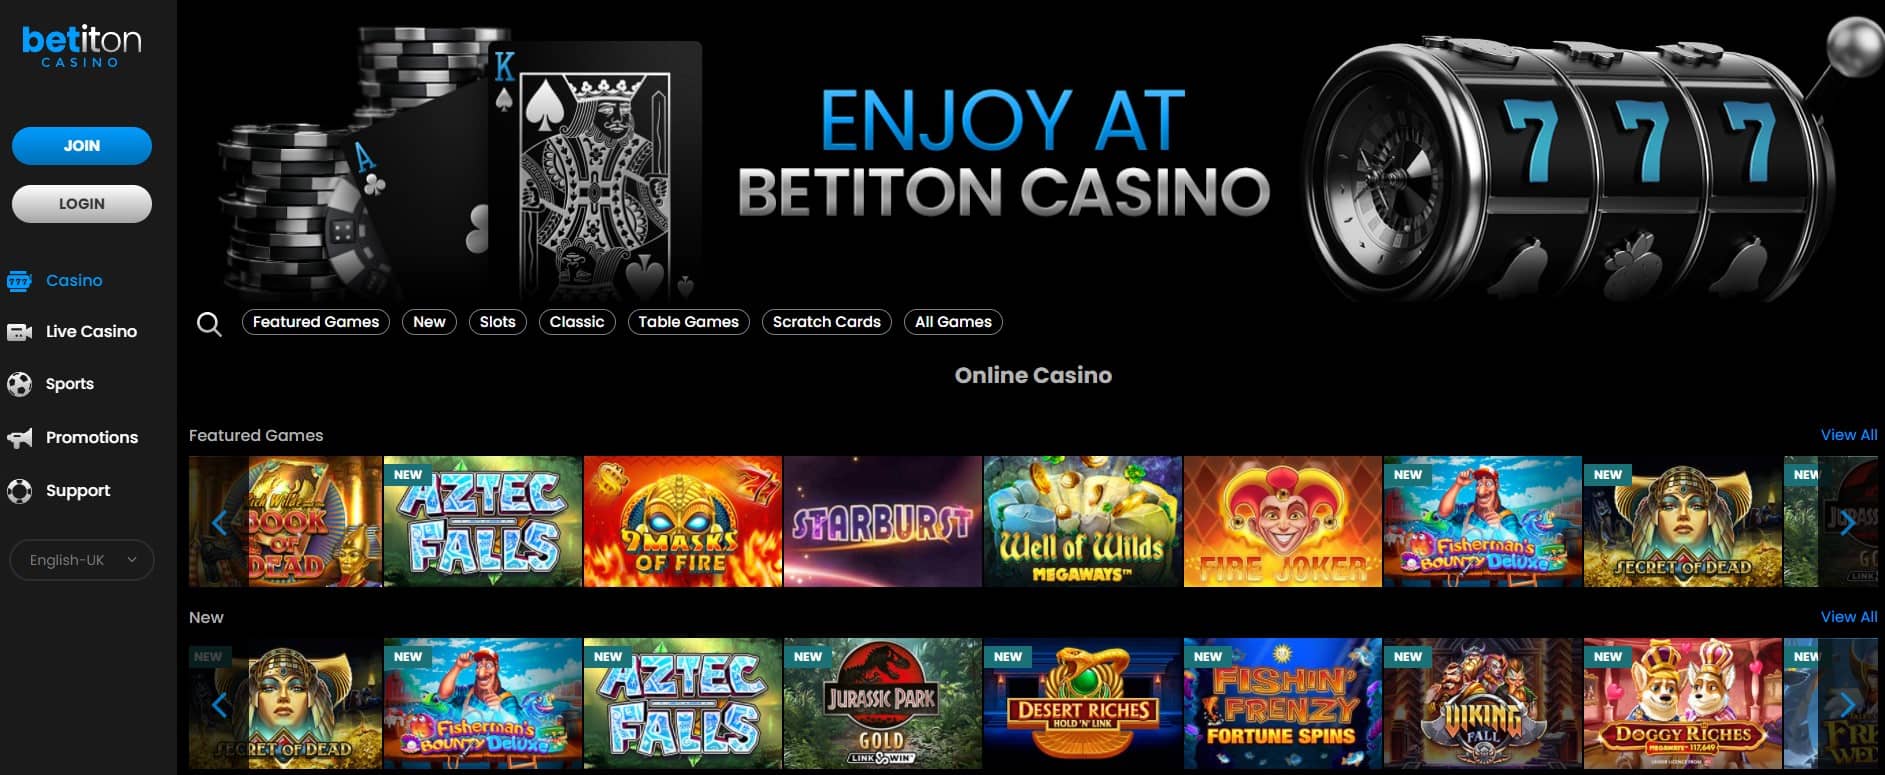 betiton casino uk